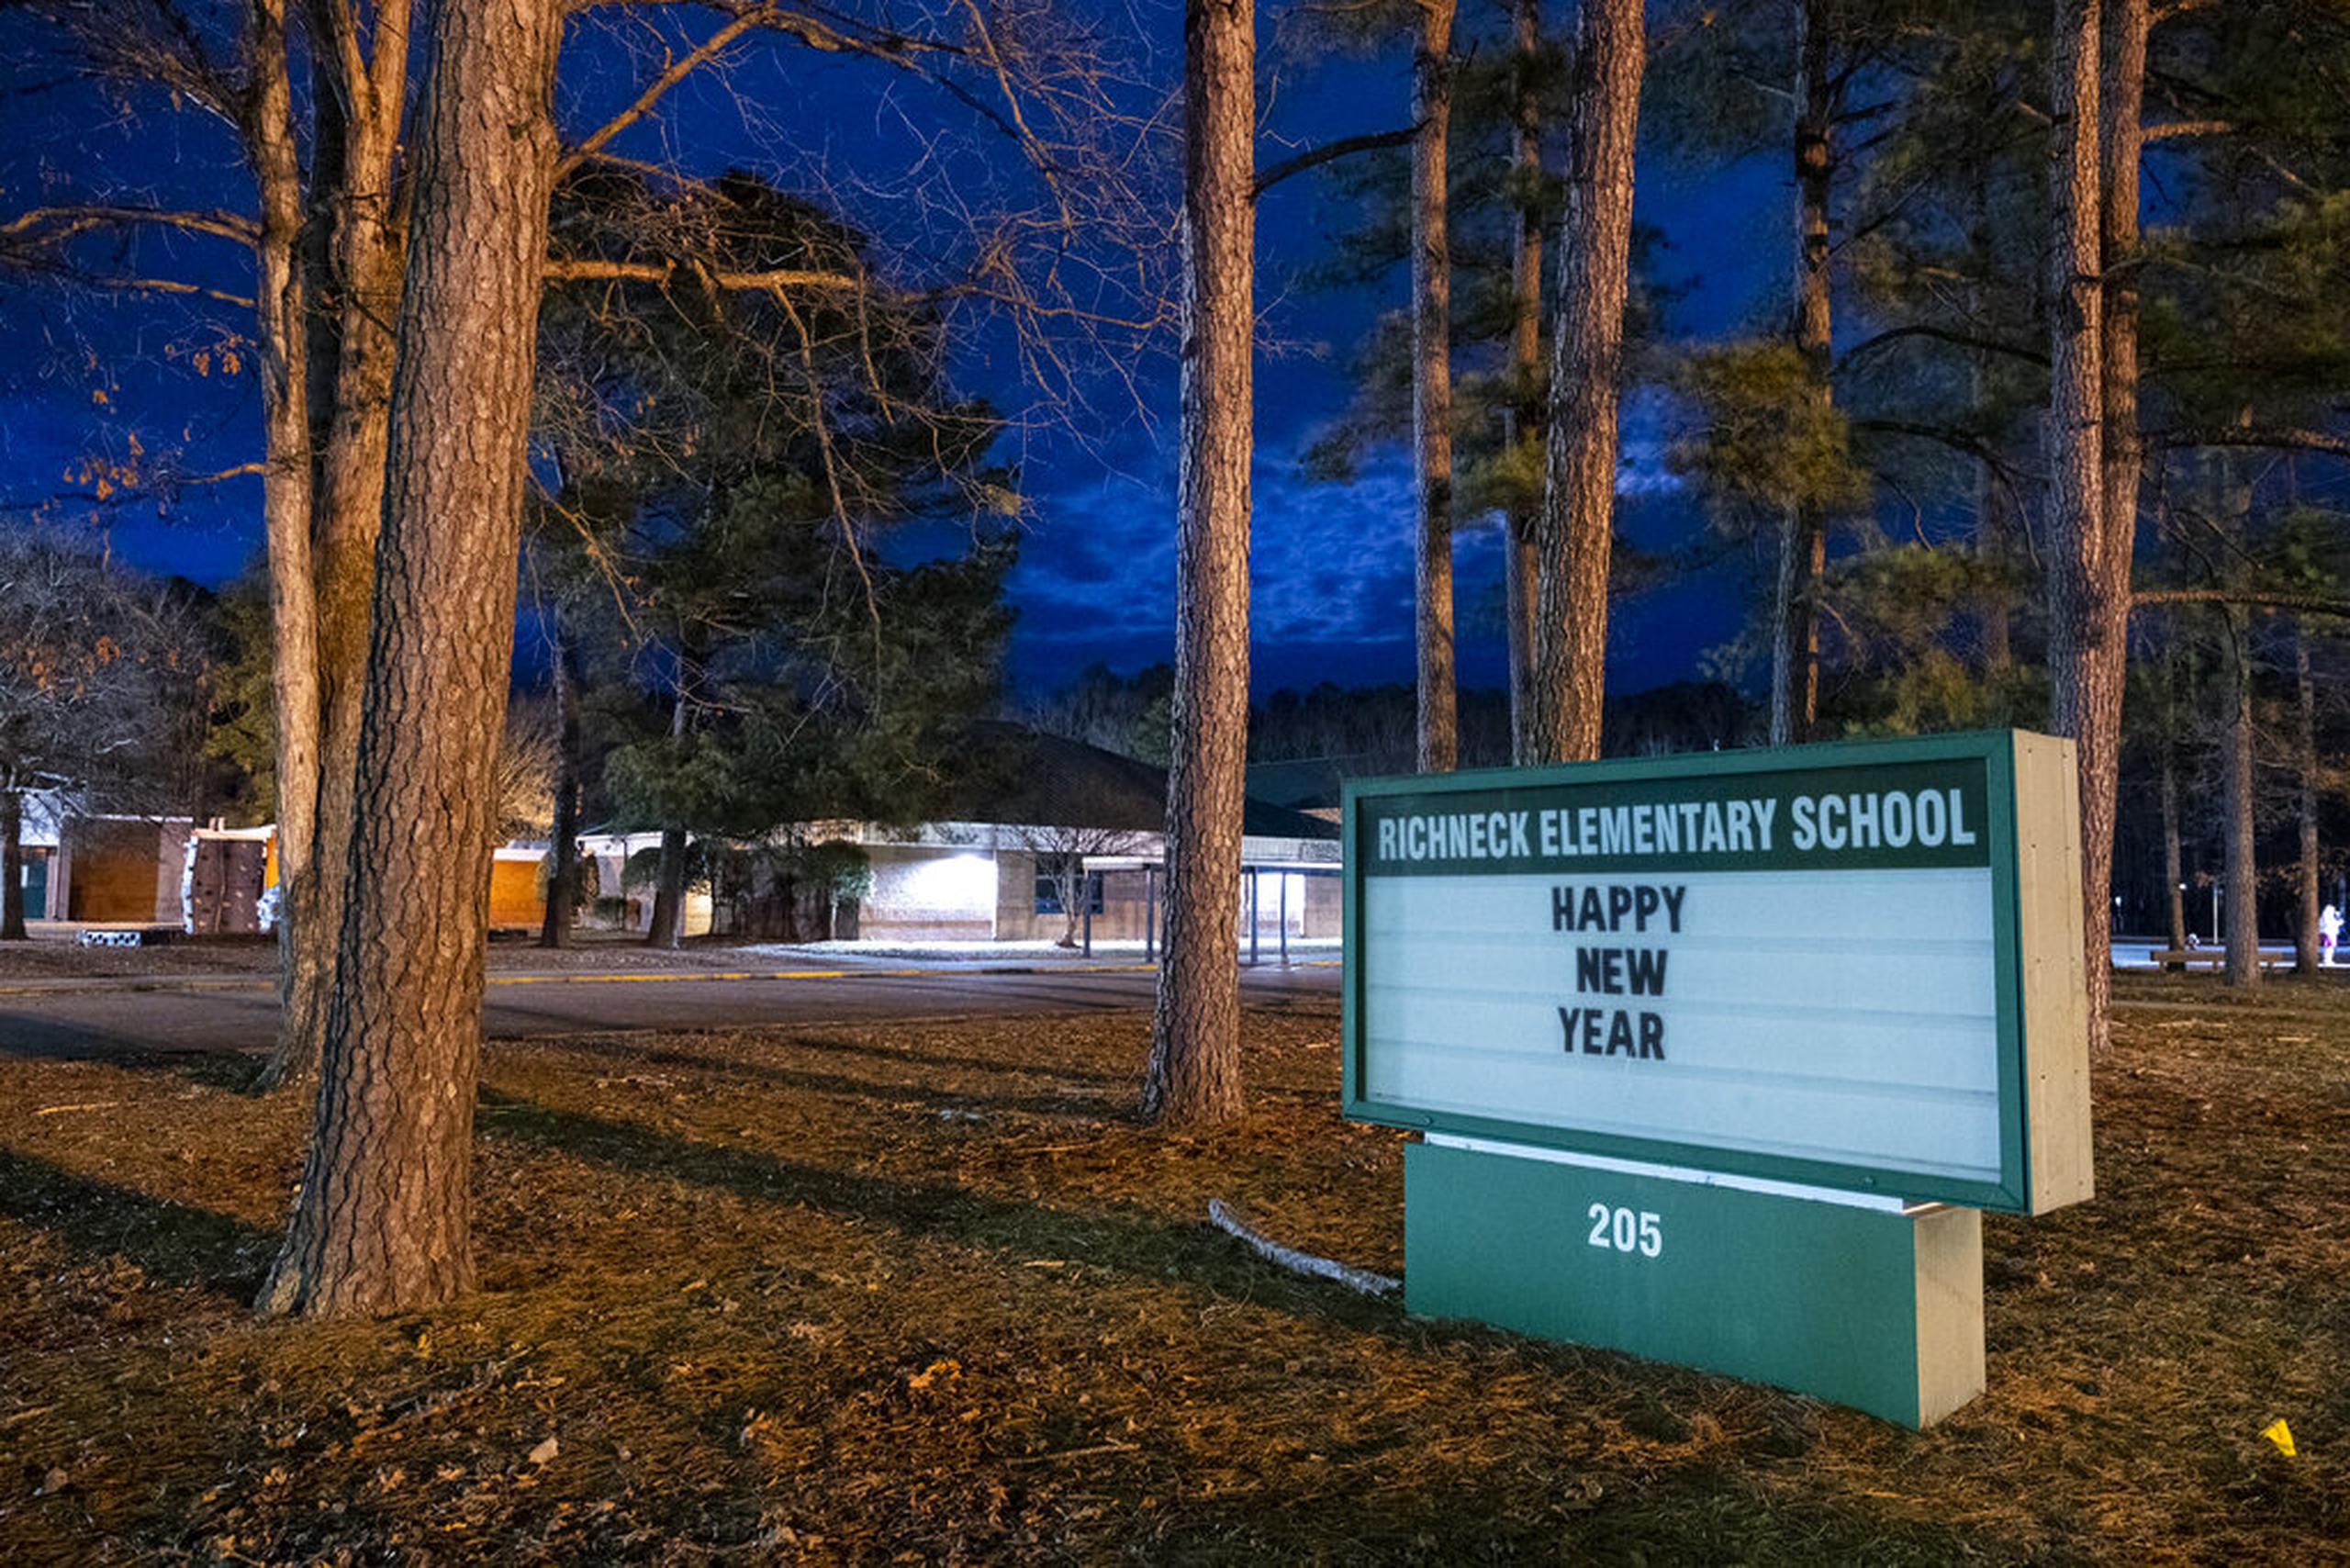 La presidenta de la Junta Escolar de Newport News, Lisa Surles-Law, informó que el distrito instalará detectores de metales en todas las escuelas, comenzando con Richneck.